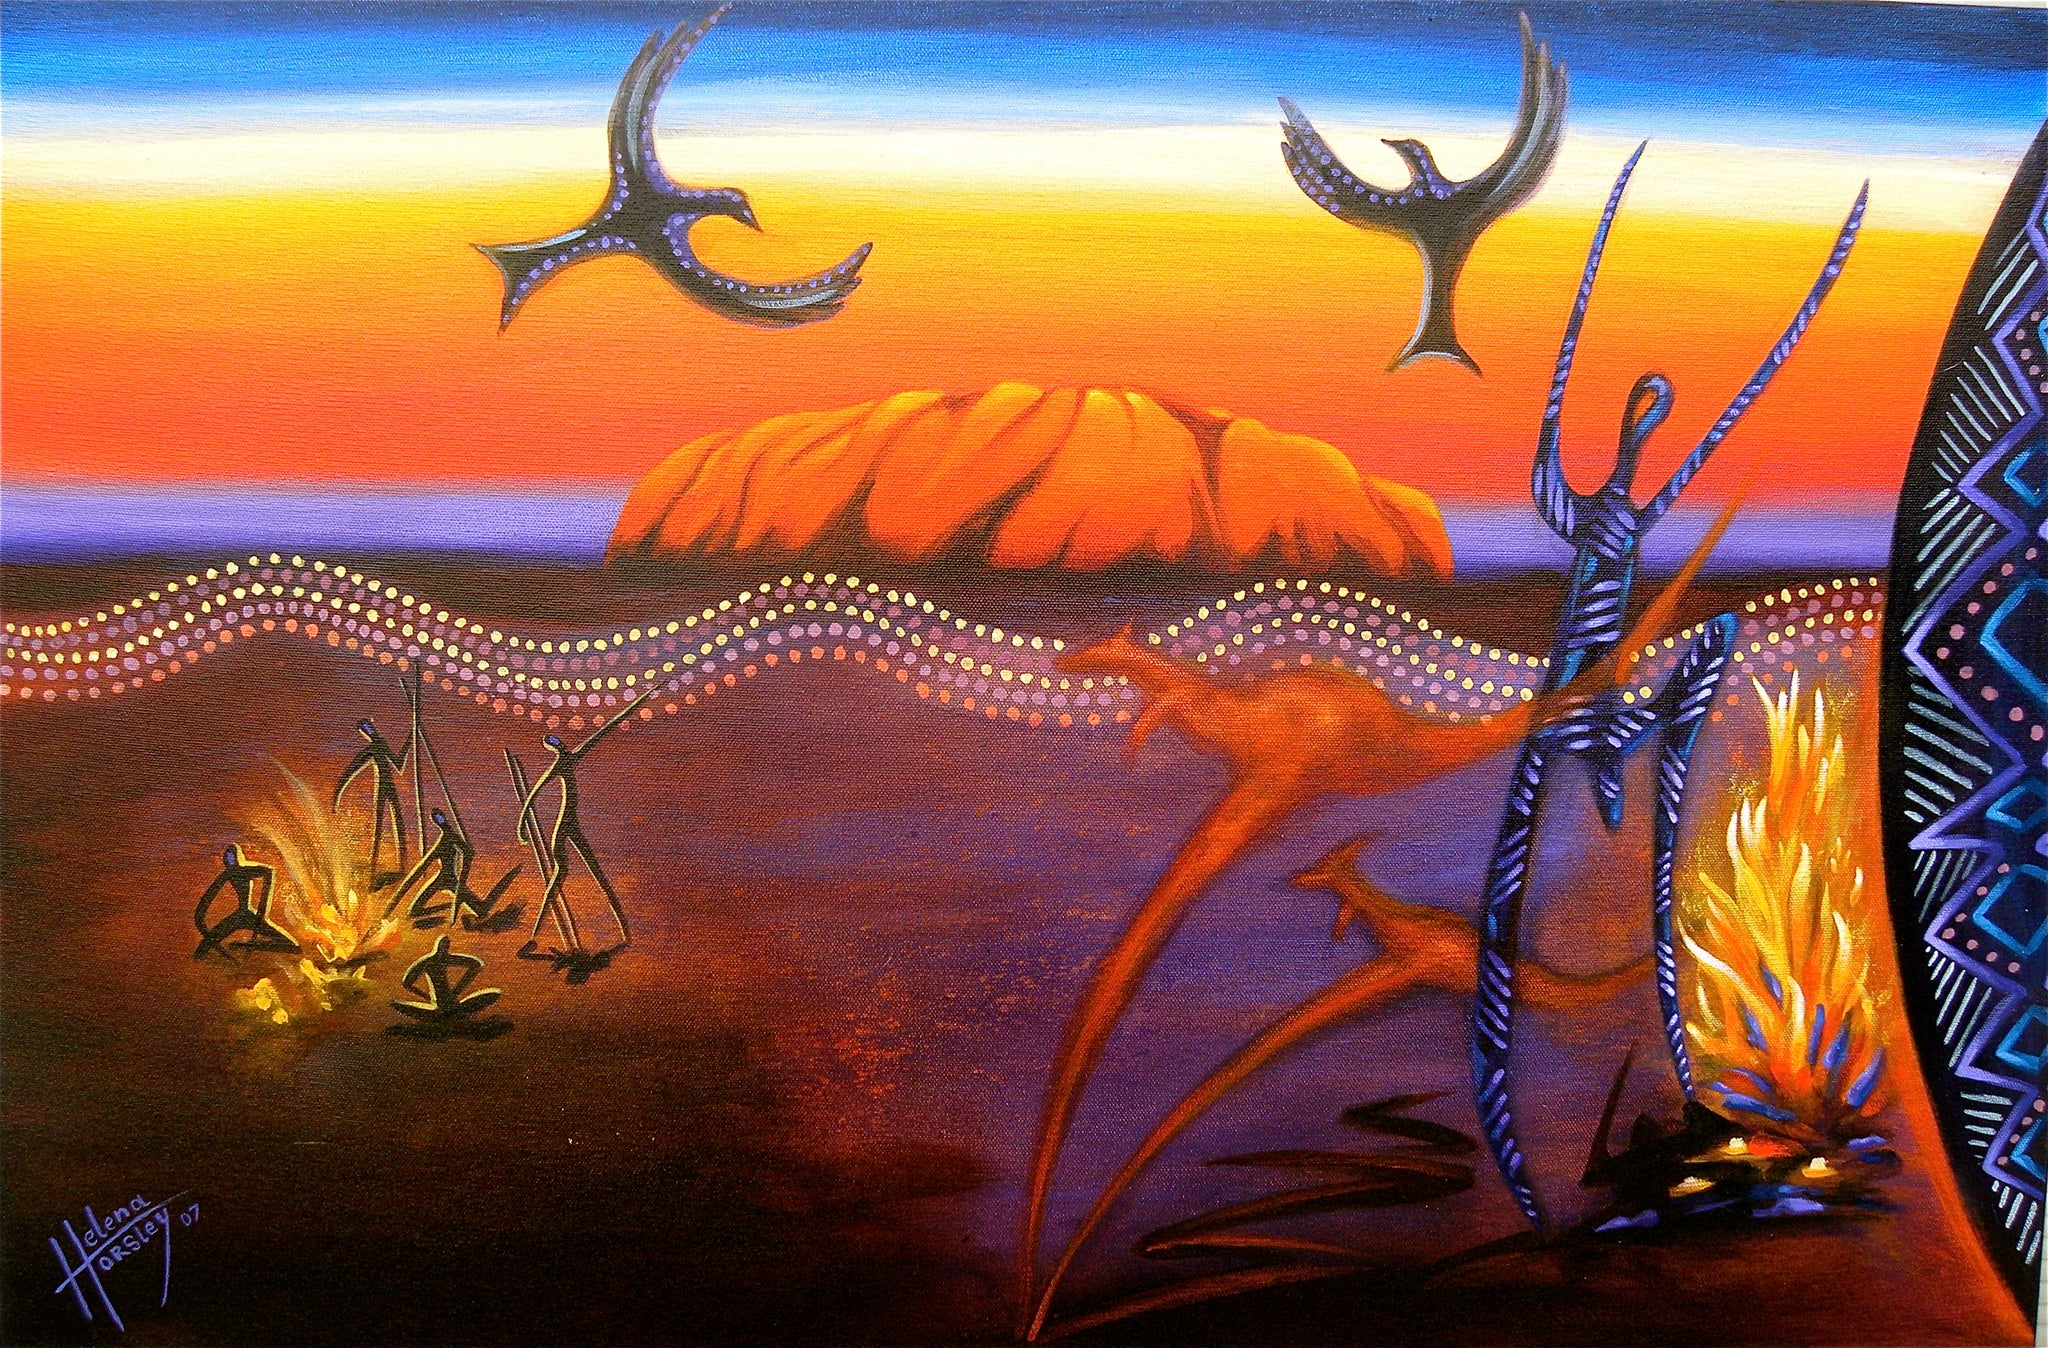 Aboriginal corroboree